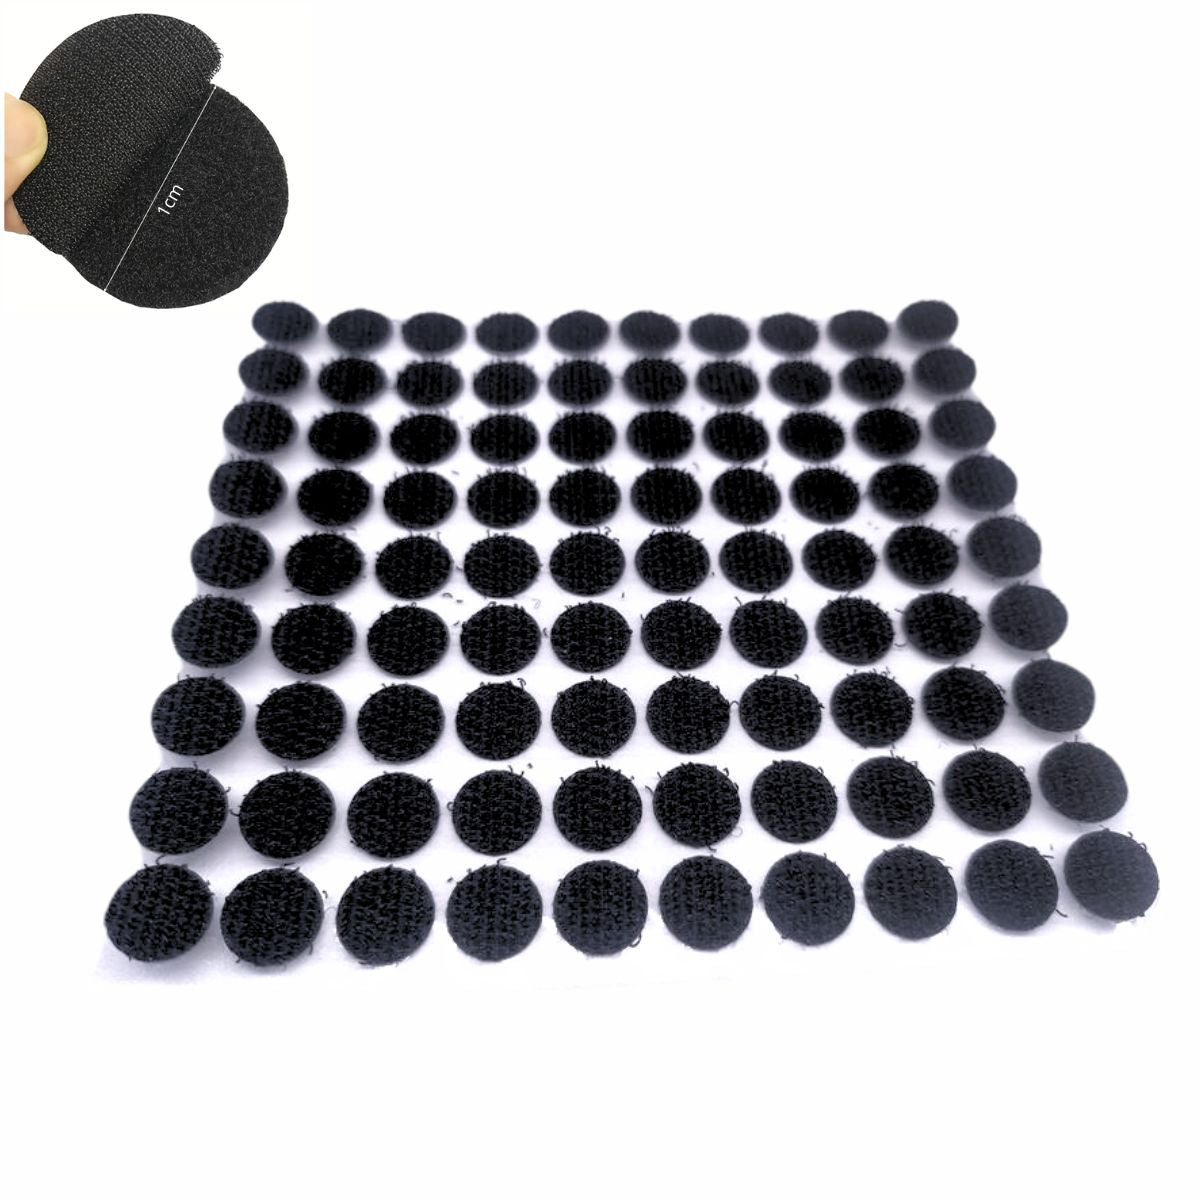 Circulitos de Velcro Adhesivo Negro de 1cm